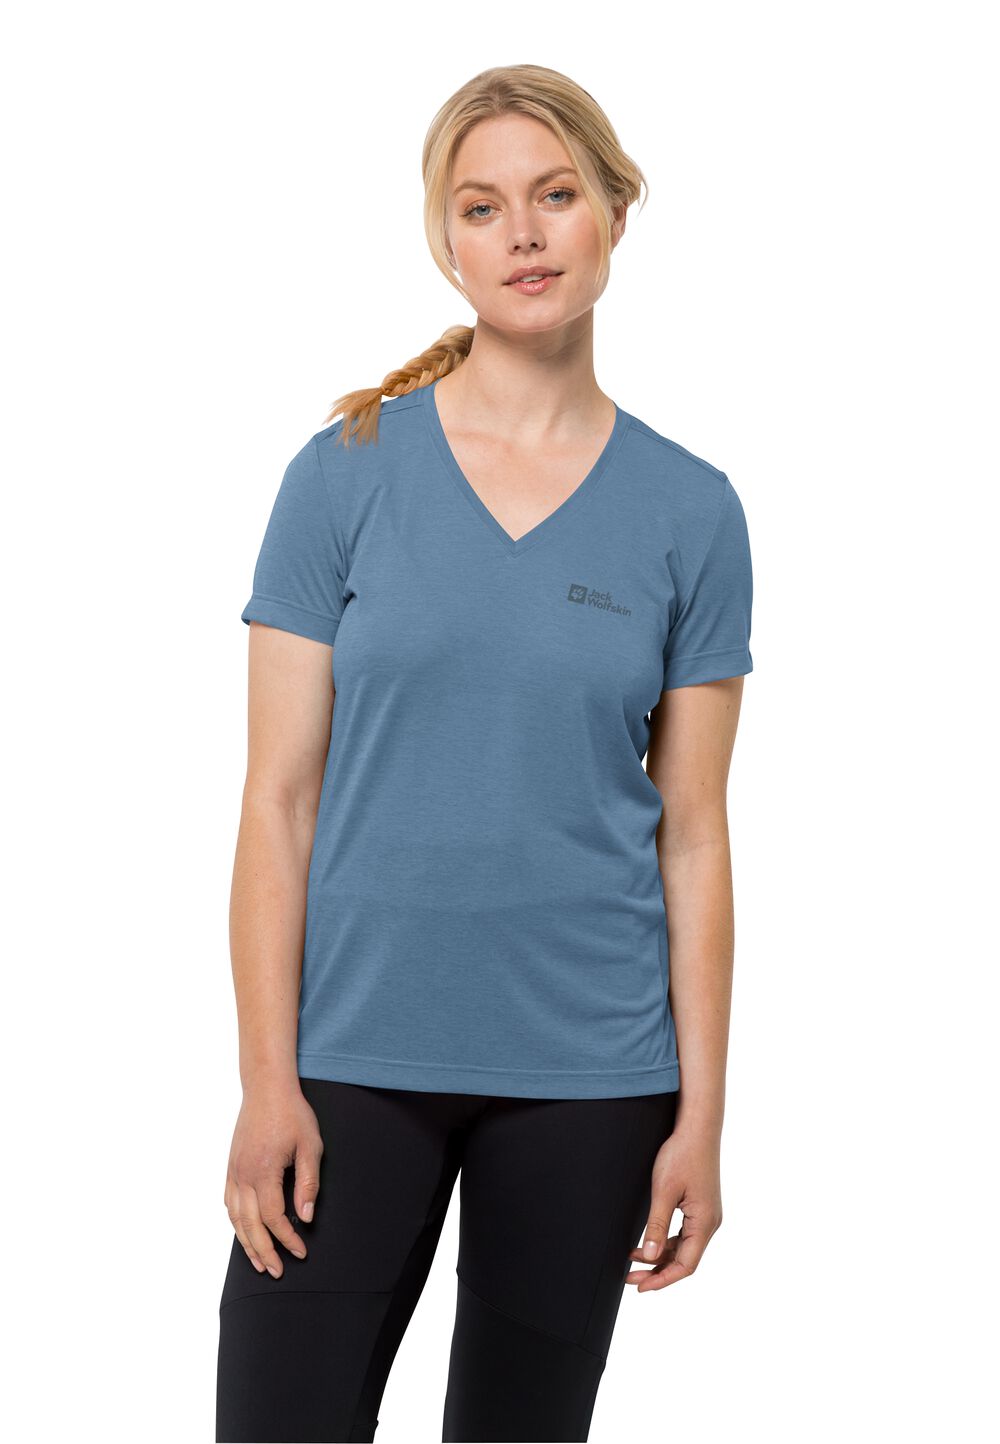 Jack Wolfskin Crosstrail T-Shirt Women Functioneel shirt Dames M elemental blue elemental blue